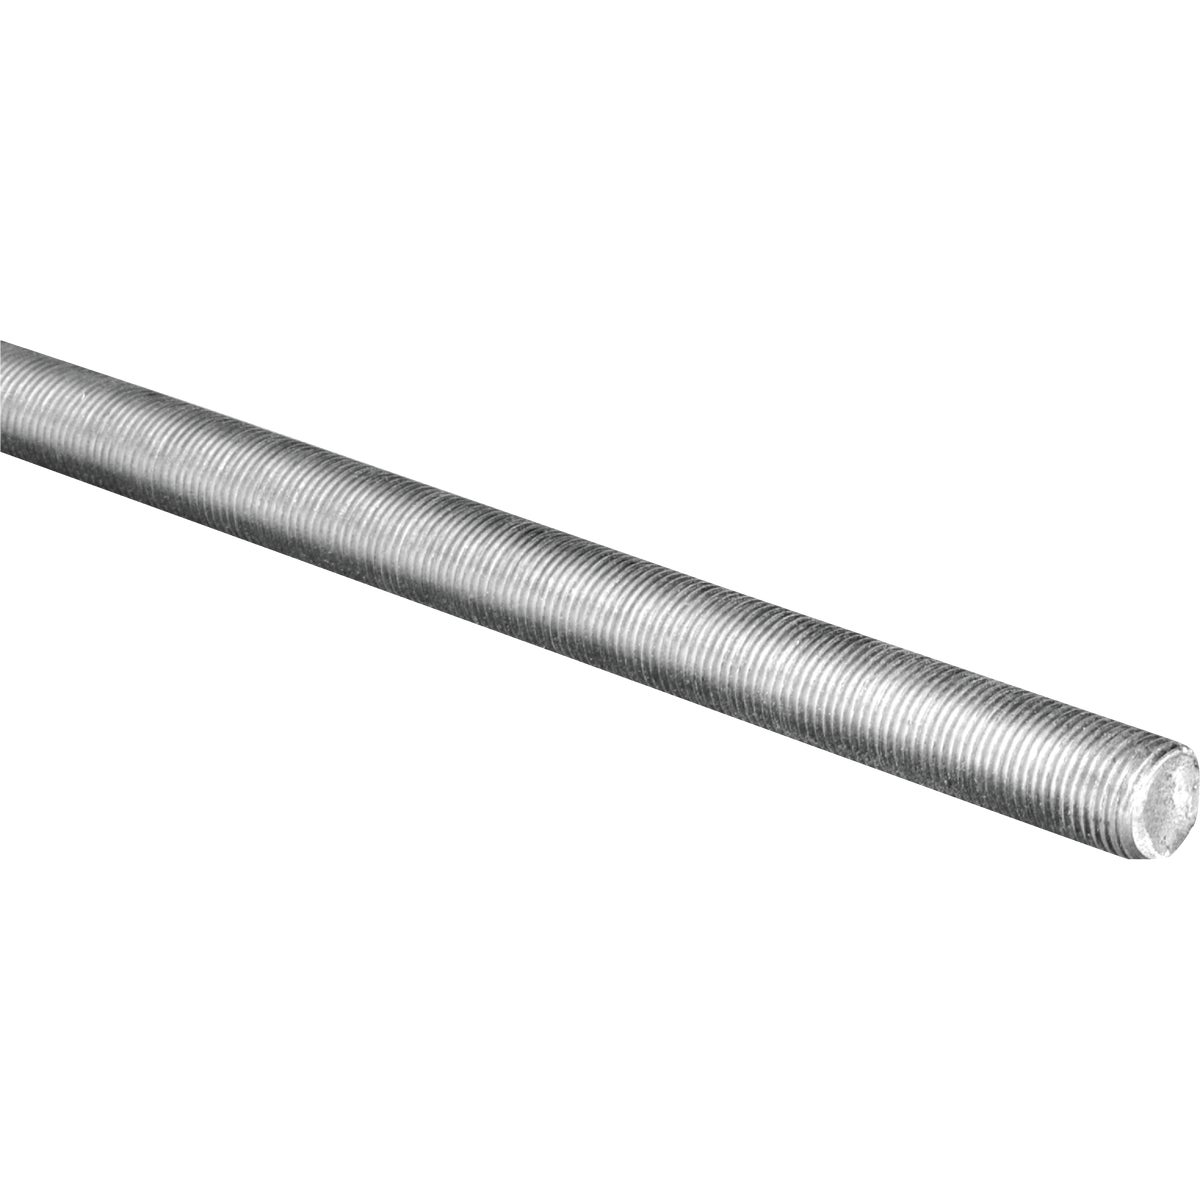 Hillman Steelworks 5/8 In. x 1 Ft. Steel Threaded Rod